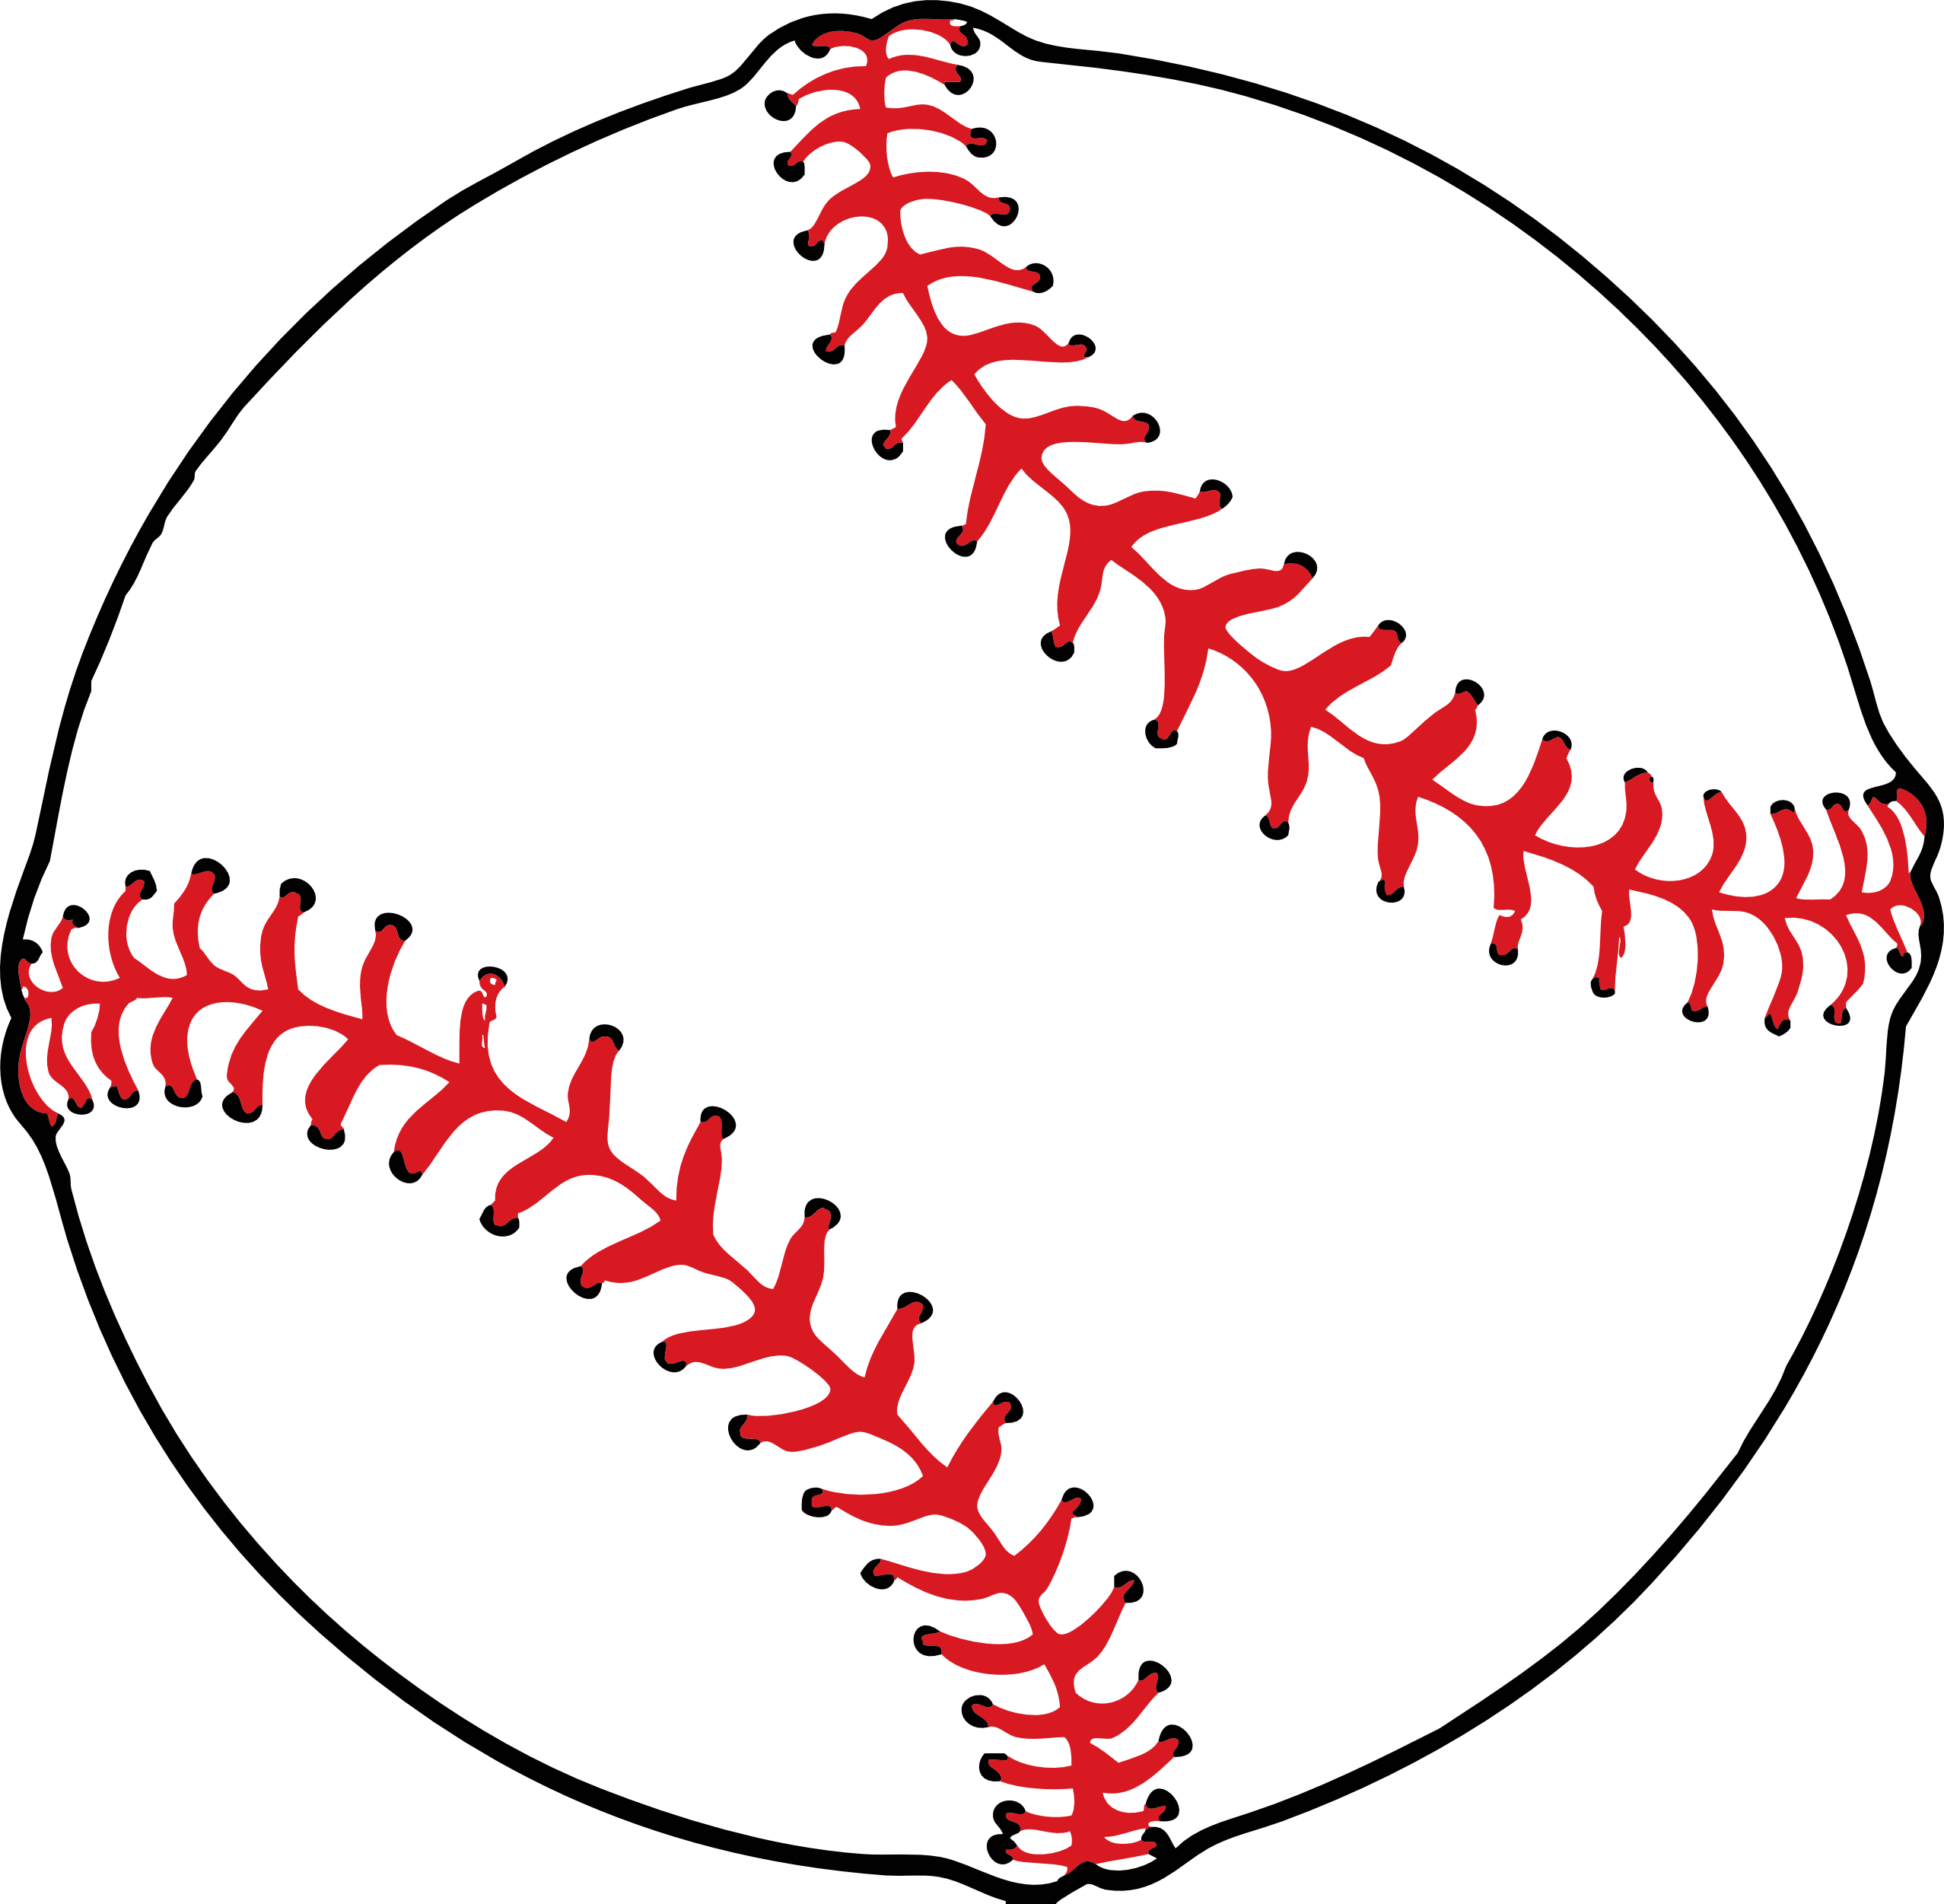 Balle de base-ball